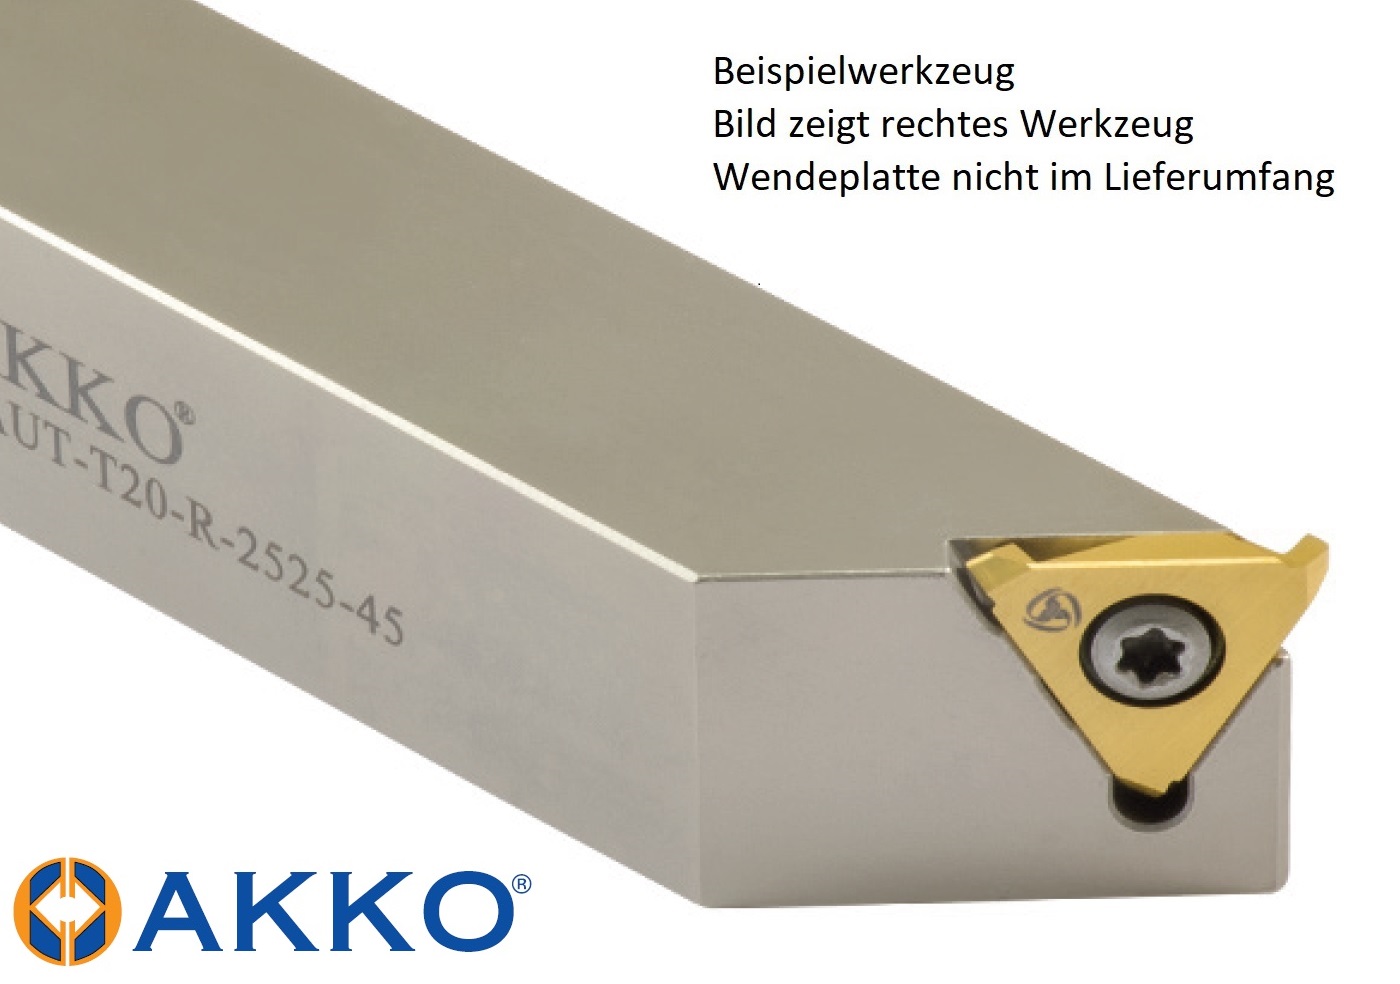 AKKO-Drehhalter für axiale Freistiche 16 mm x 16 mm, kompatibel mit AKKO-Wendeplatte T20… 
Ausführung rechts